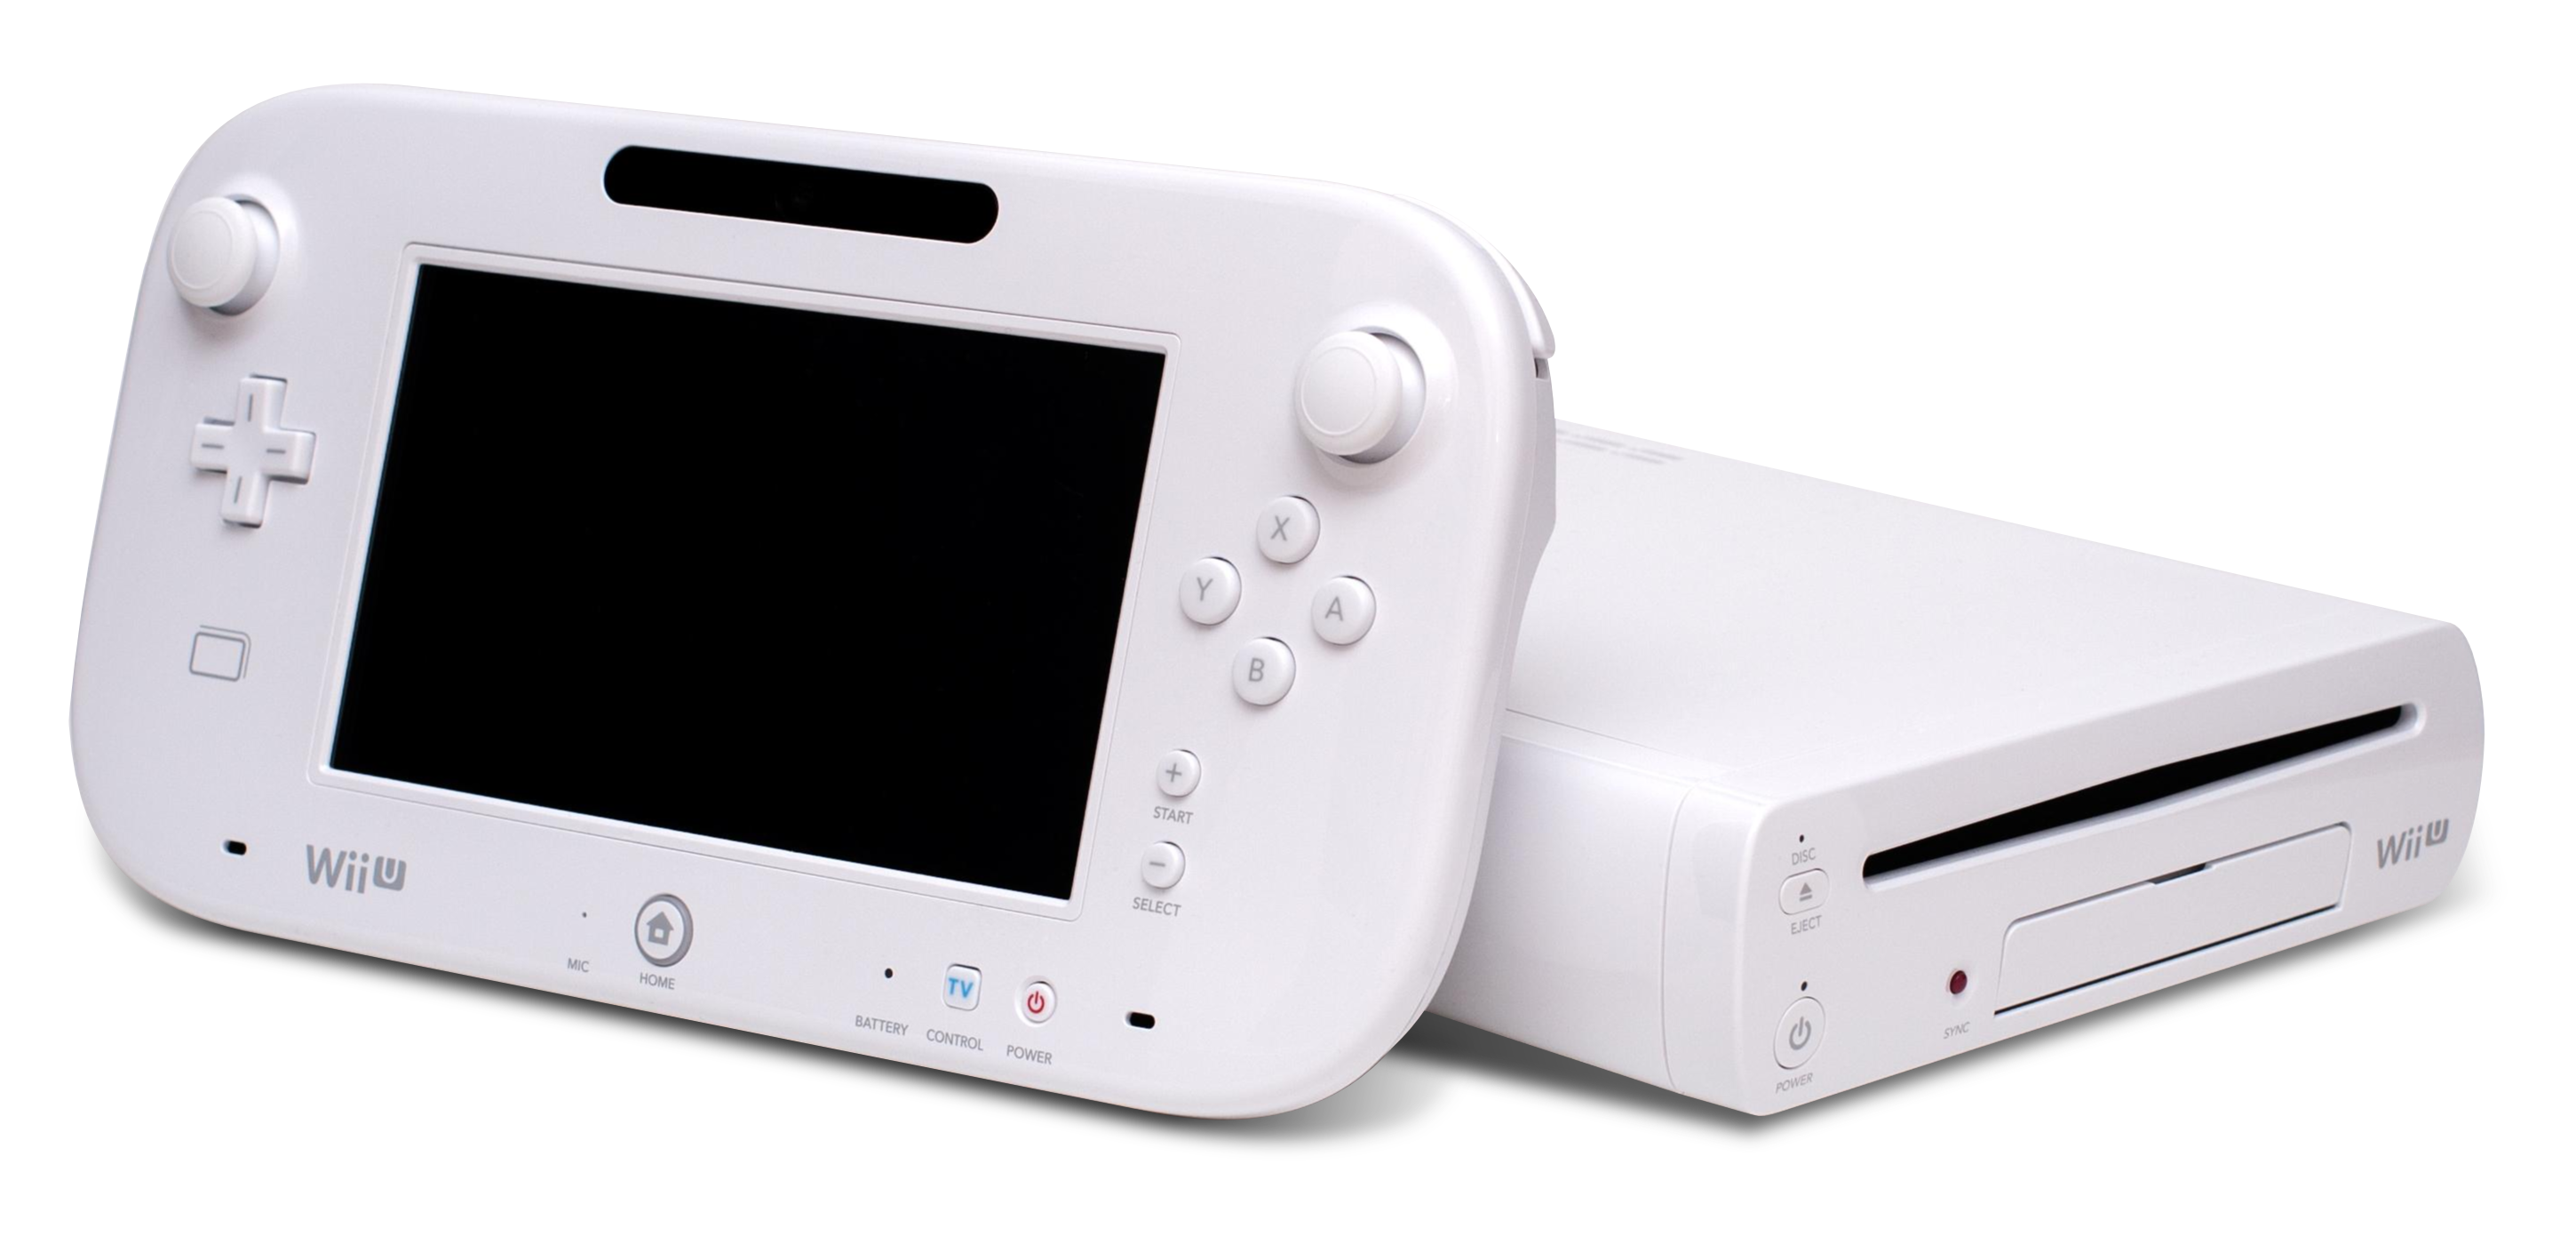 Wii U sucede a Wii y ofrece una nueva forma de jugar